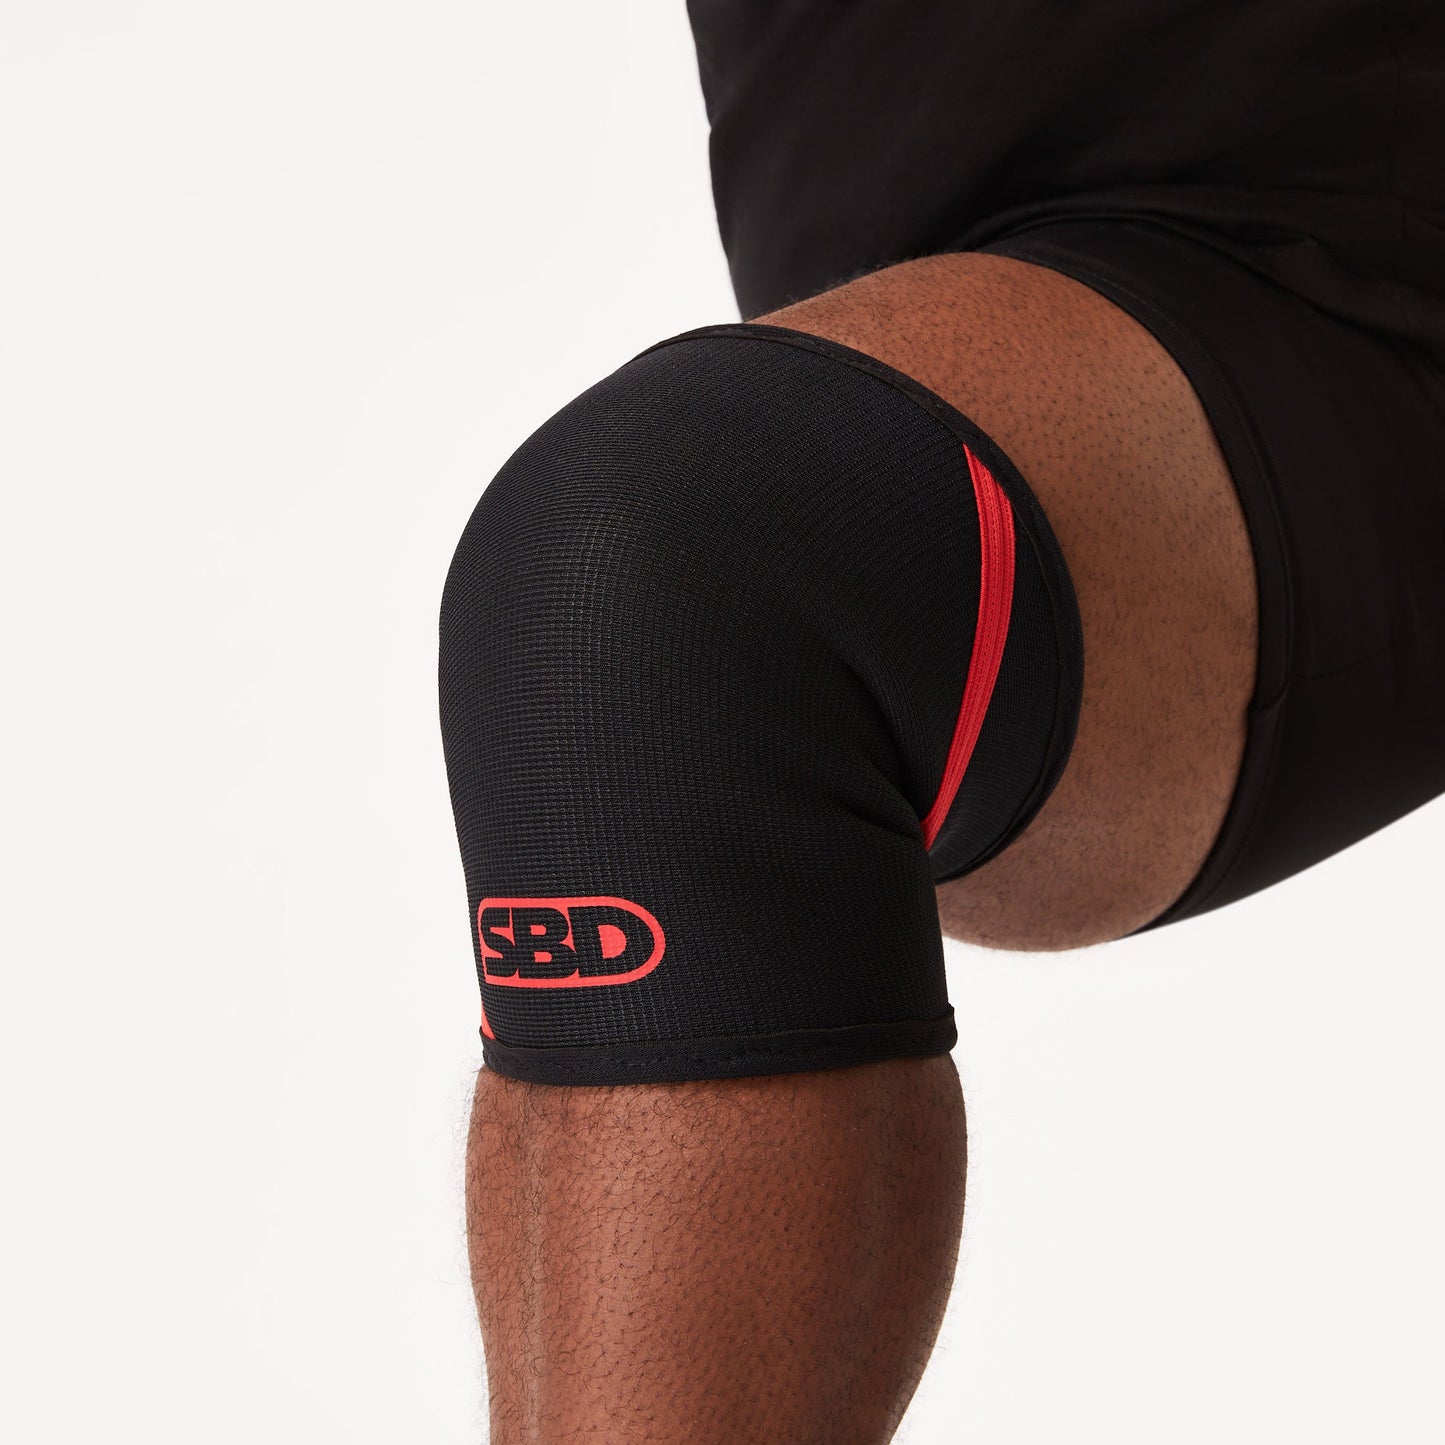 SBD 5mm Weightlifting Knee Sleeves